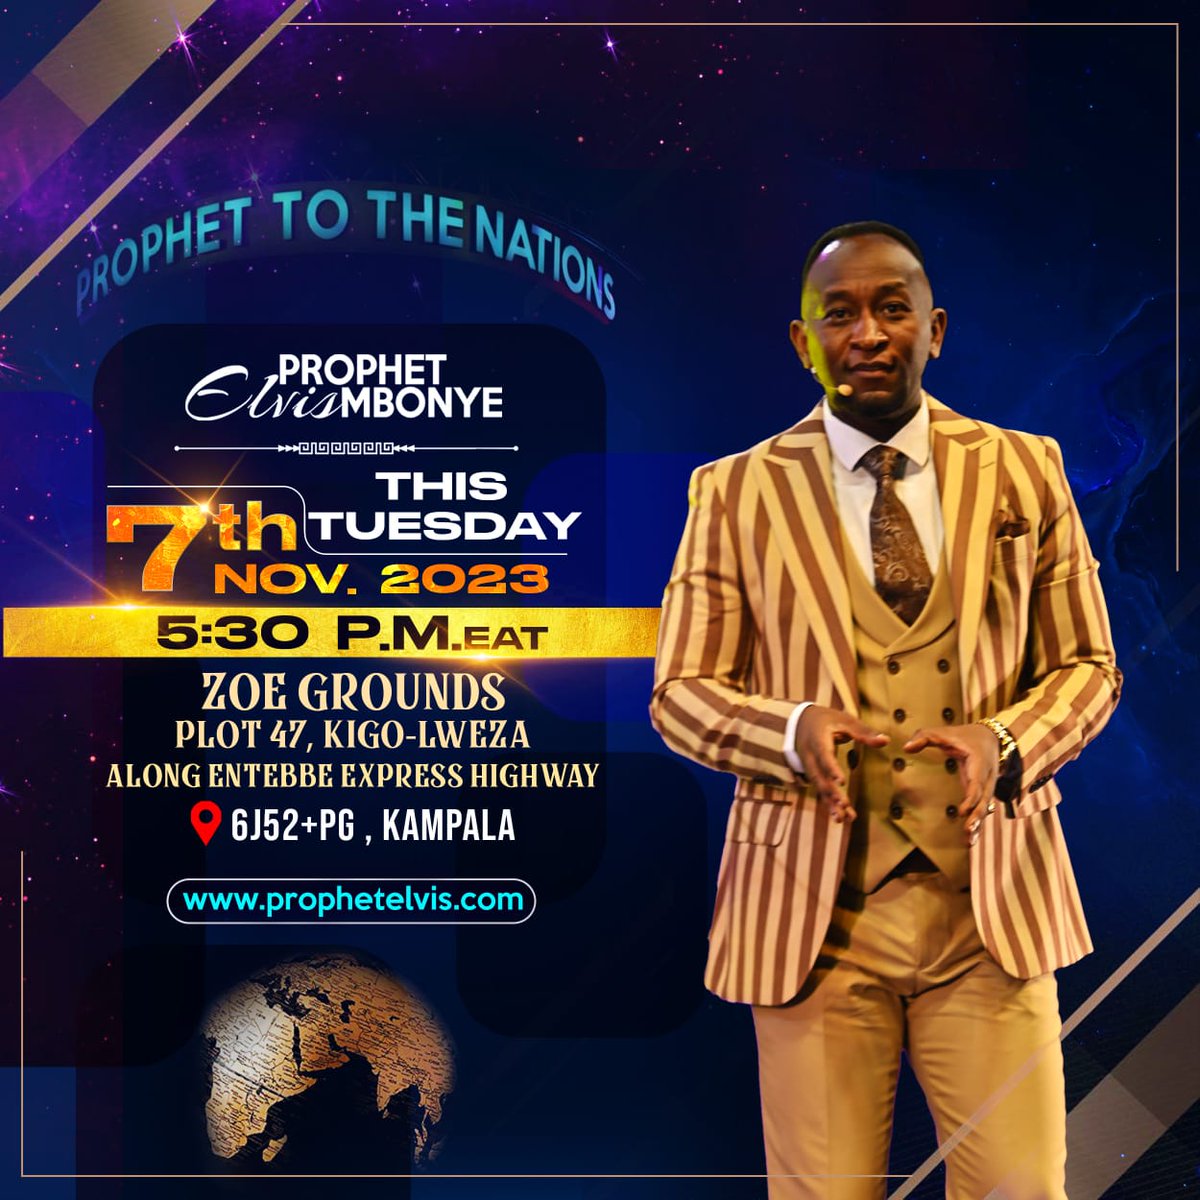 Prophet Elvis Mbonye this Tuesday November 07, 2023 5:30 pm at Plot 47 Kigo Lweza, Kampala Uganda. 📍bit.ly/zoegrounds #ProphetElvisMbonye